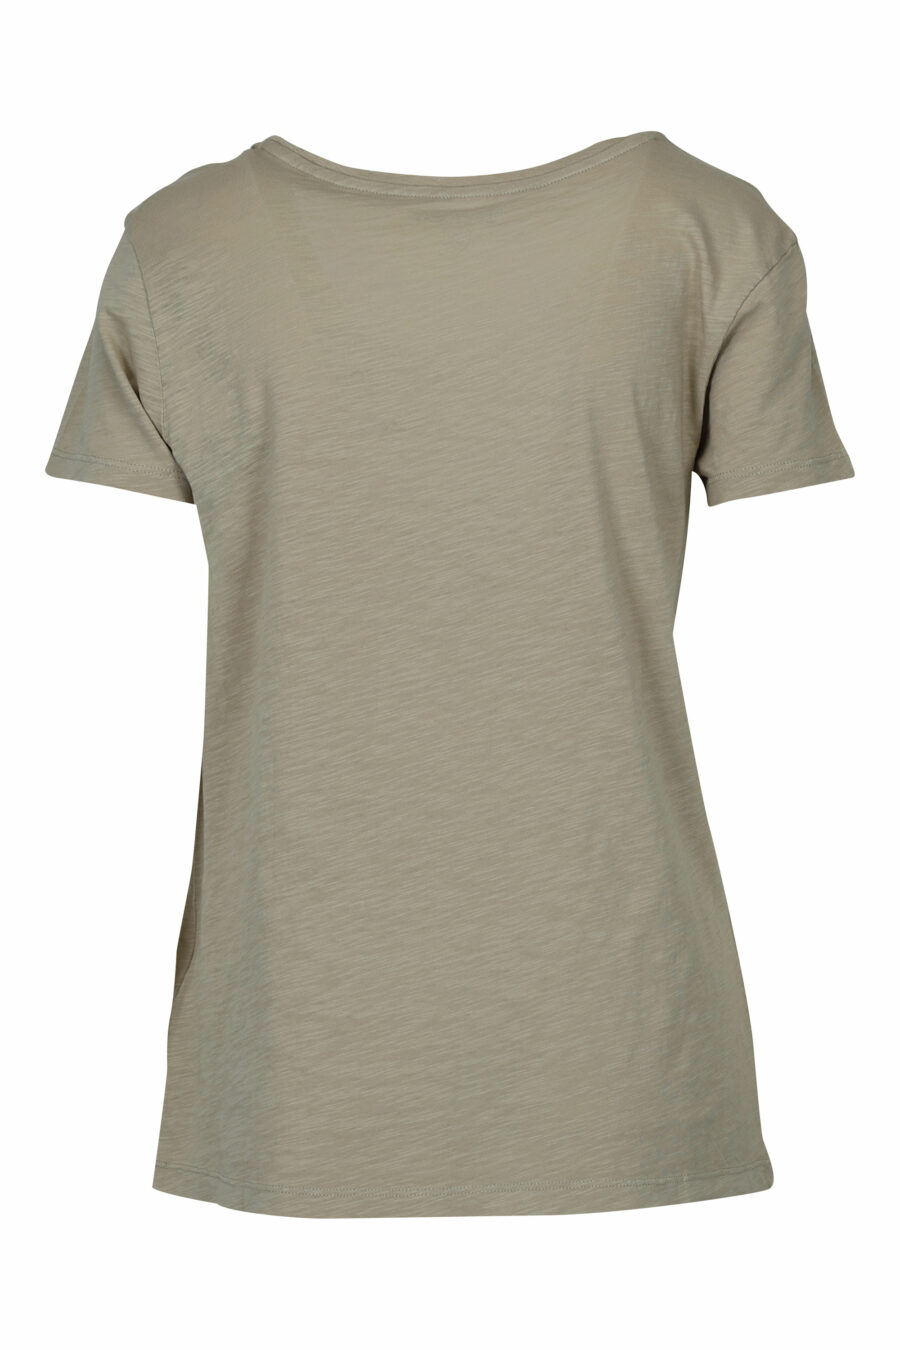 Beigefarbenes T-Shirt mit schwarzem Maxilogo-Text - 8058610686352 1